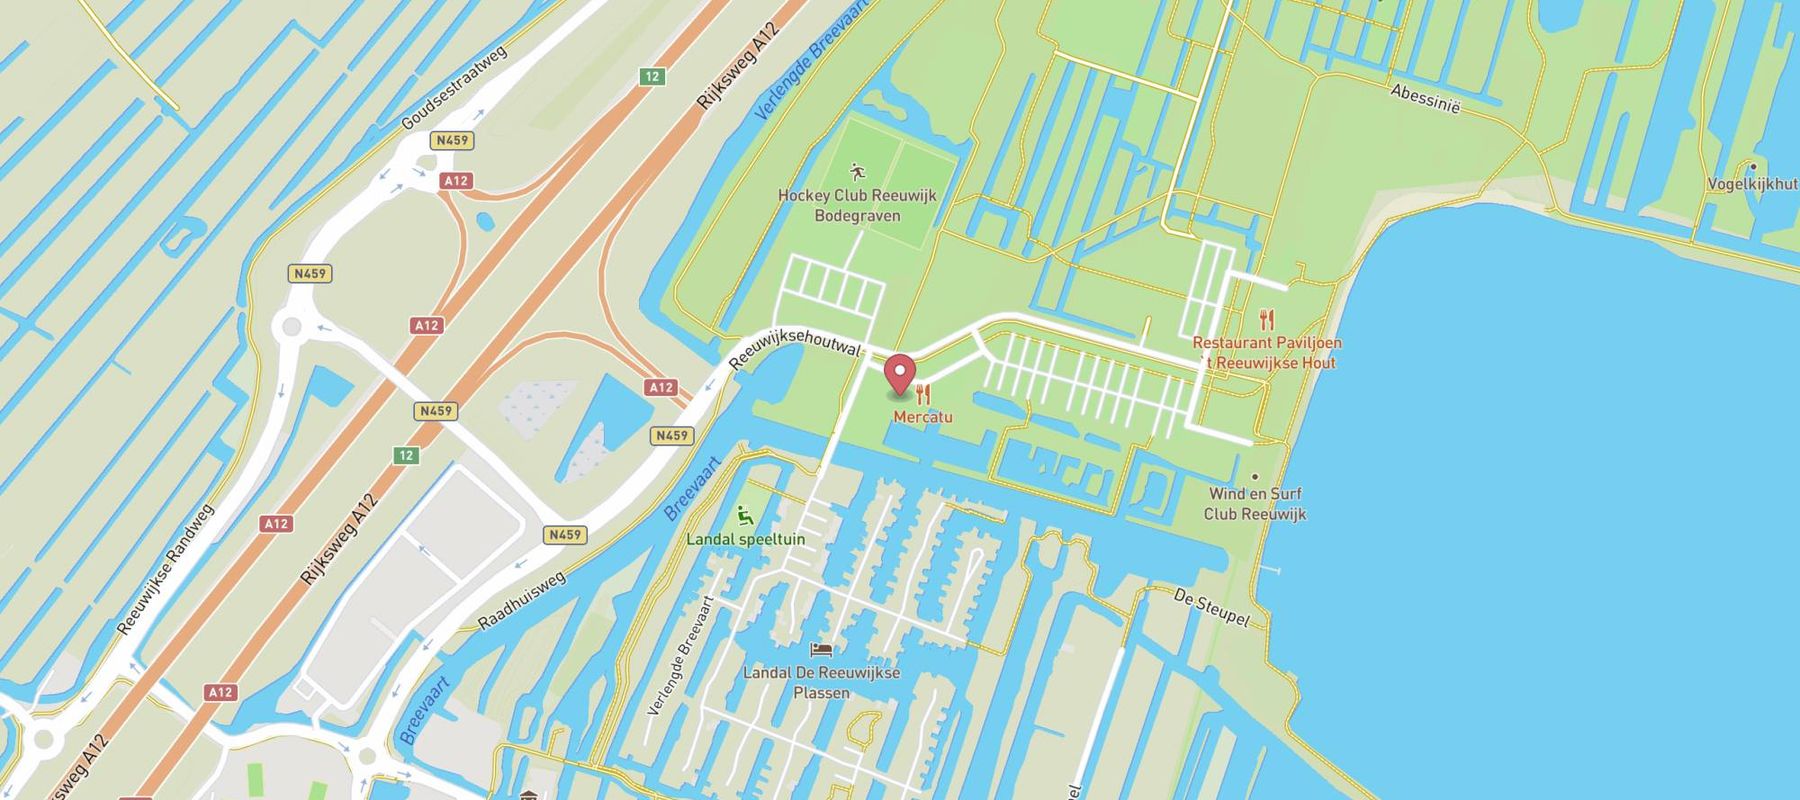 Landal De Reeuwijkse Plassen map